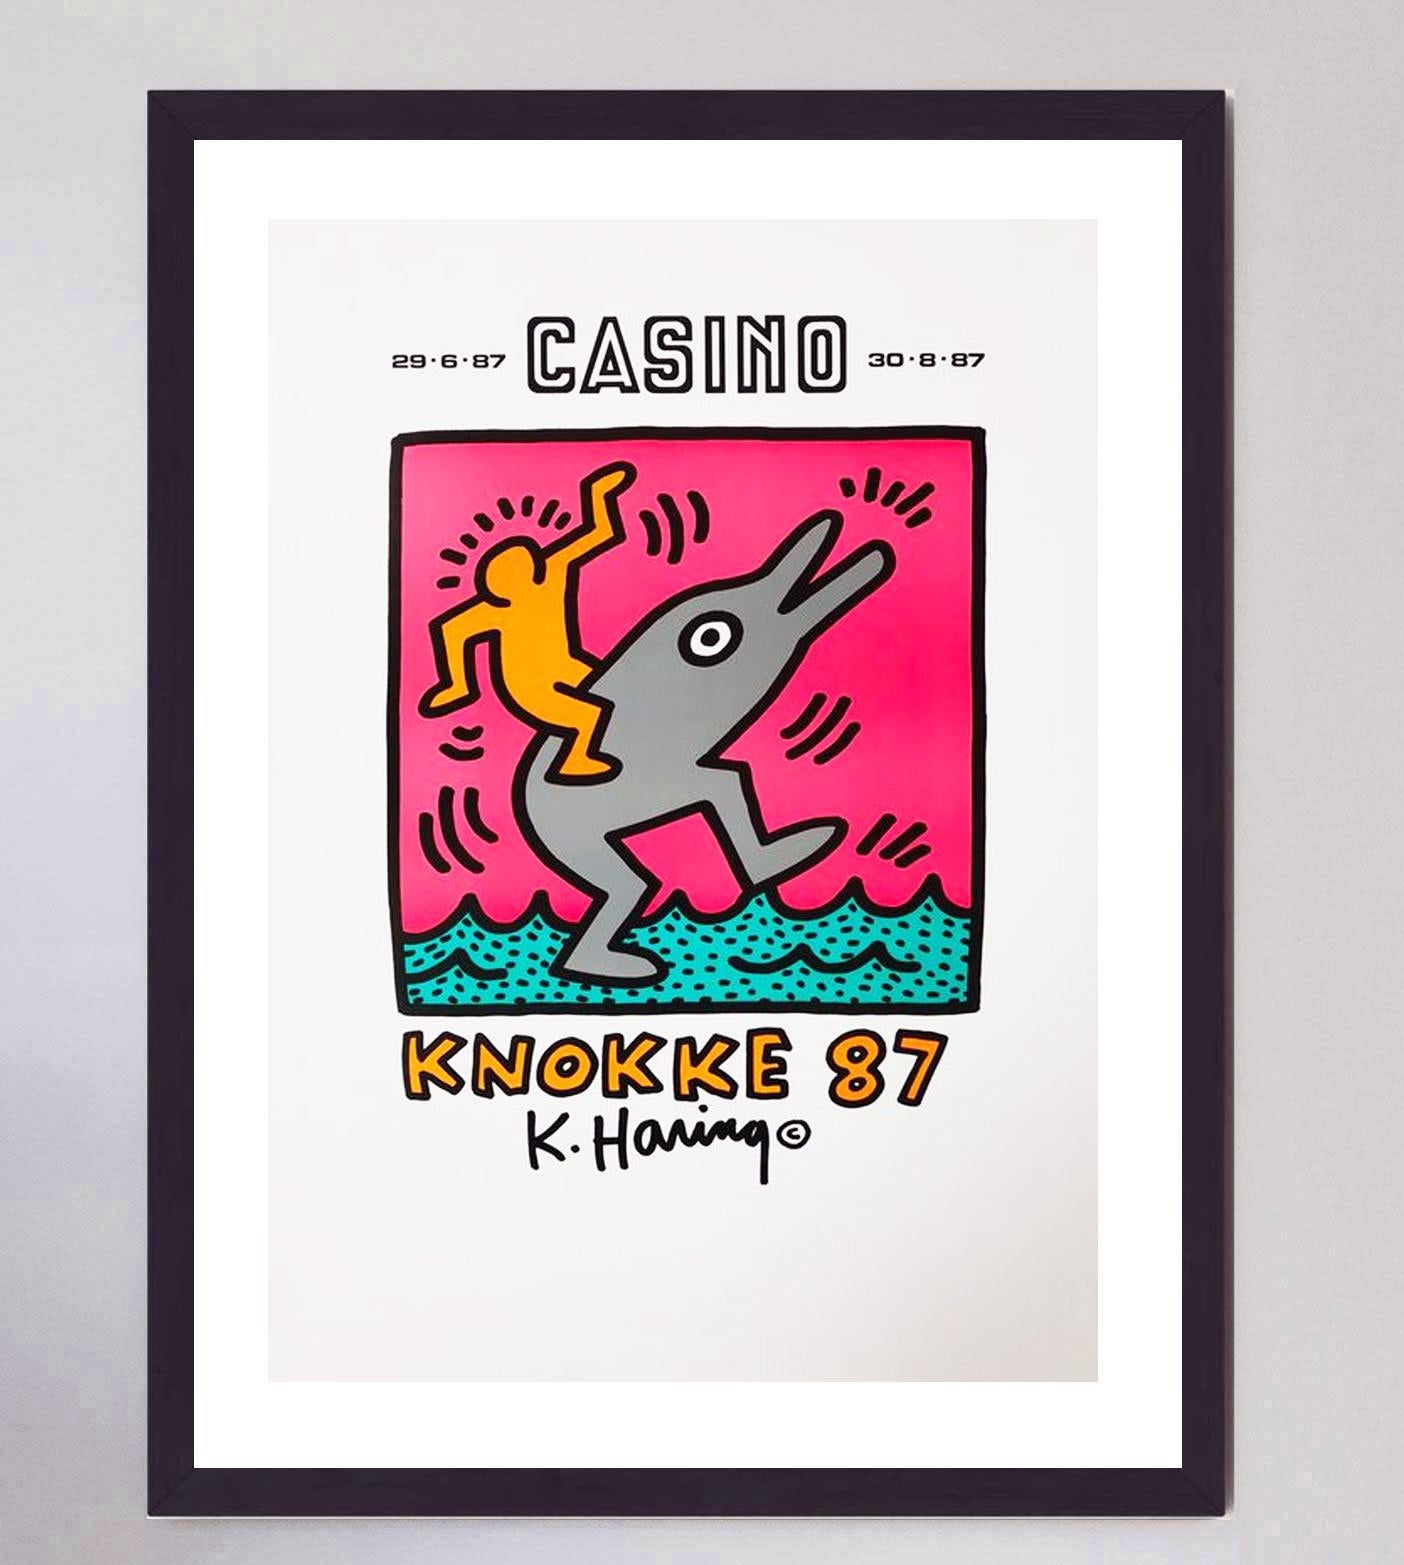 Réalisée pour promouvoir son exposition personnelle au Casino Knokke en Belgique, cette magnifique lithographie offset de Keith Haring est imprimée en 5 couleurs et présente une magnifique œuvre d'art originale. L'exposition s'est déroulée, comme